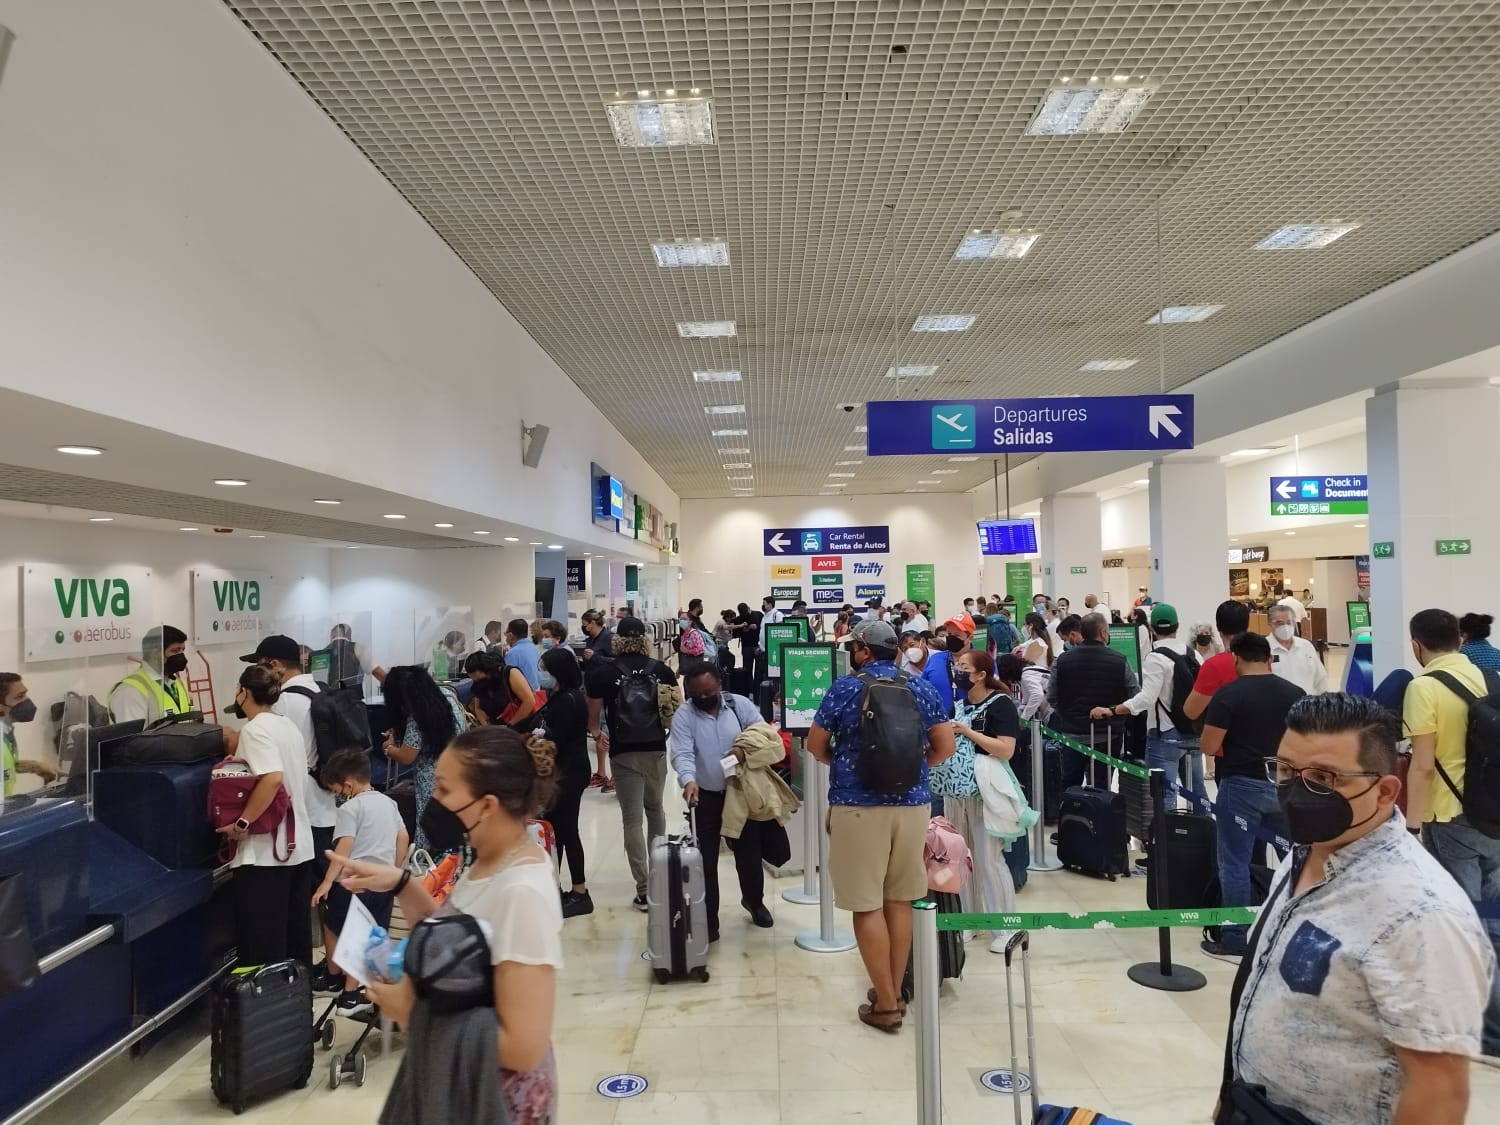 A las 6:59 tocó pista el vuelo 572 de Volaris de la ruta CDMX-Mérida